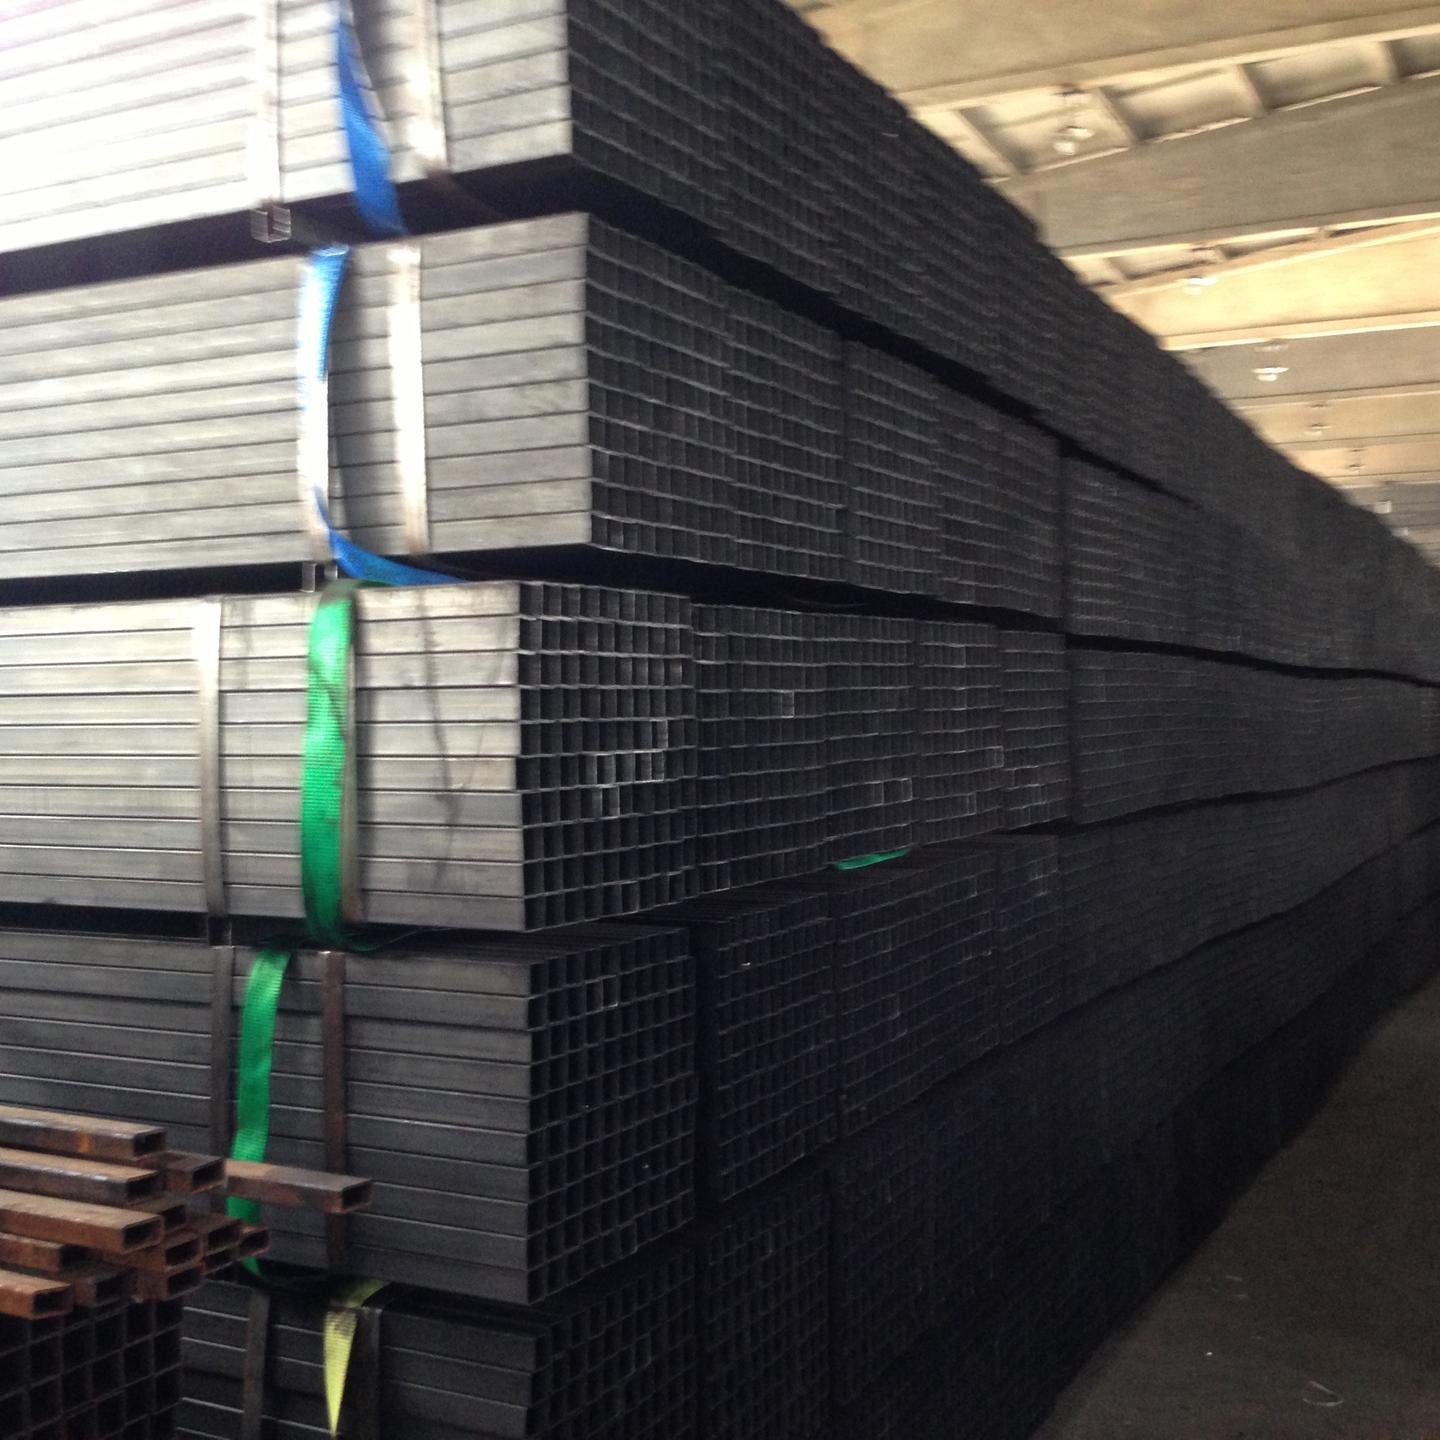 天津腾越钢铁有限公司主营销售 黑方管 焊接方管 涂油方管 30*30 Q235材质  可根据产品标准及客户需求定做